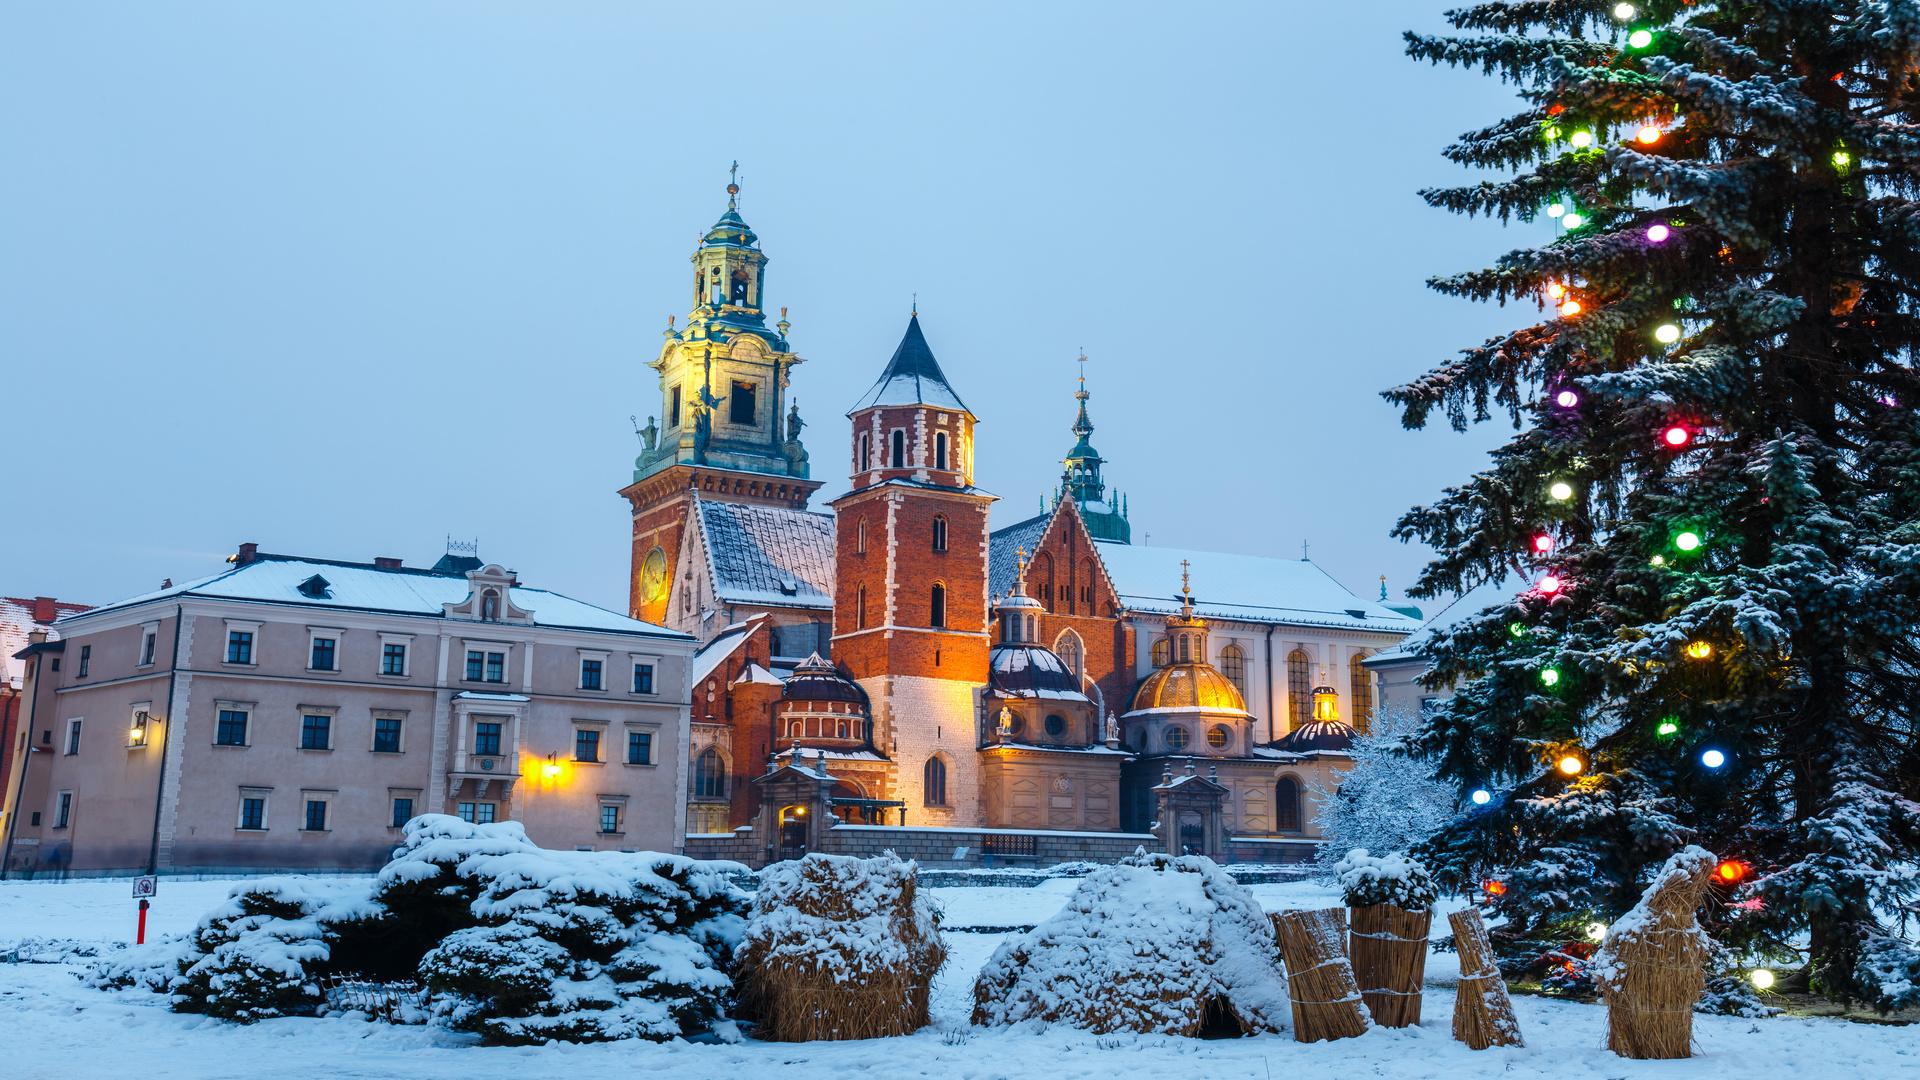 wawel castle krakow at winter 